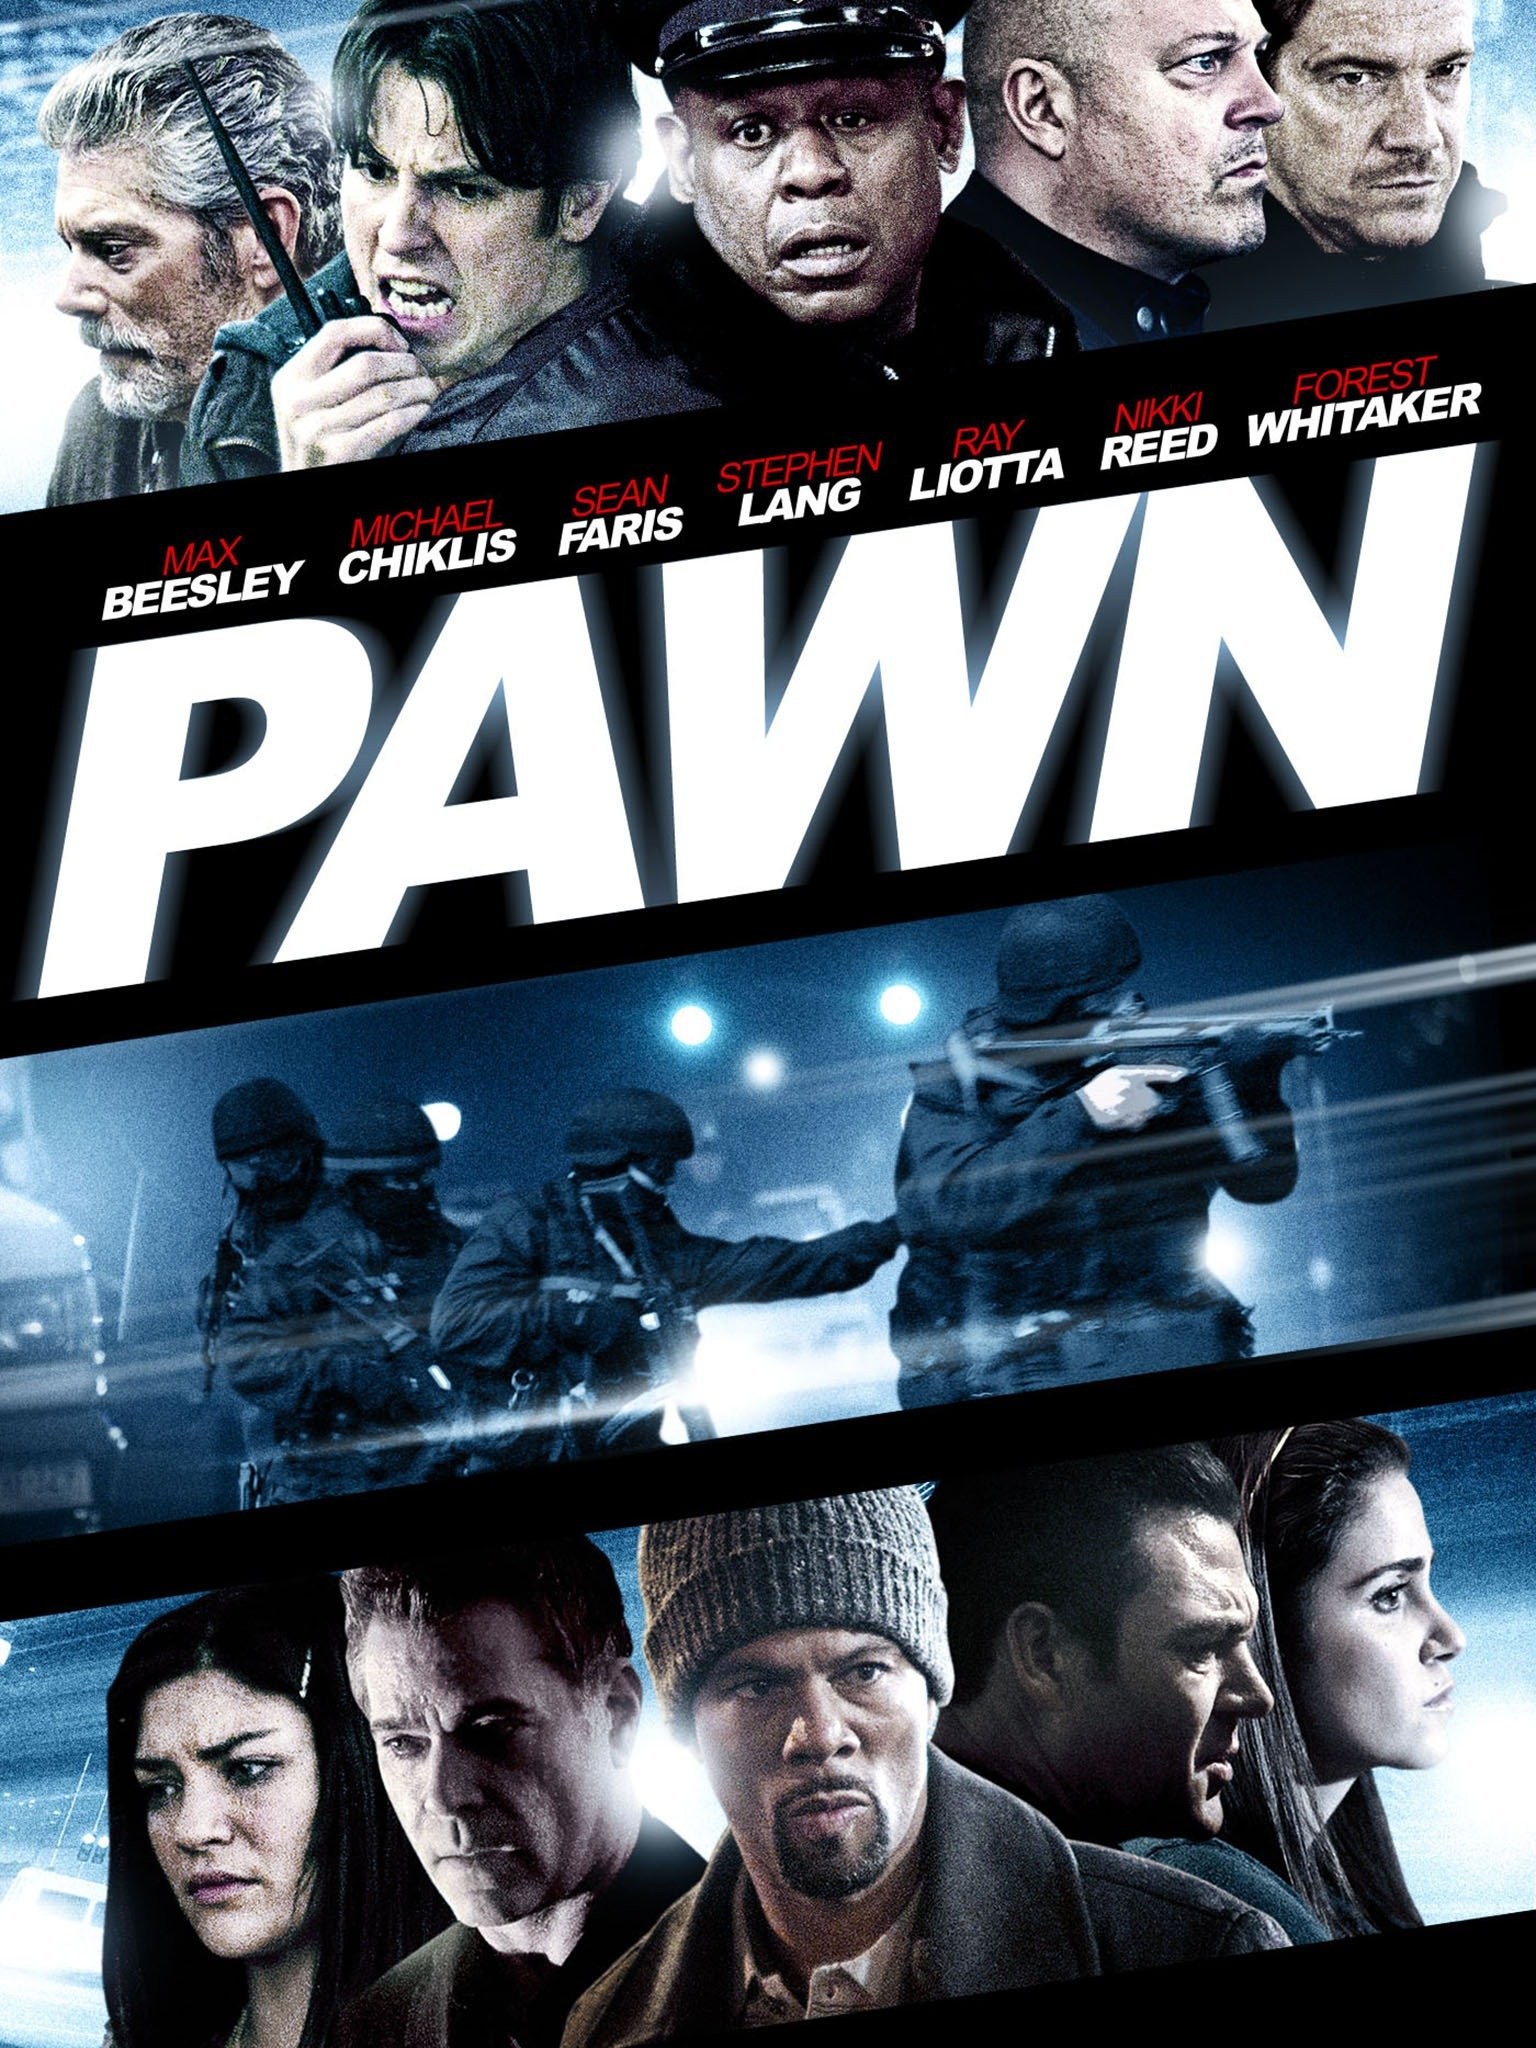 Pawn filme - Veja onde assistir online